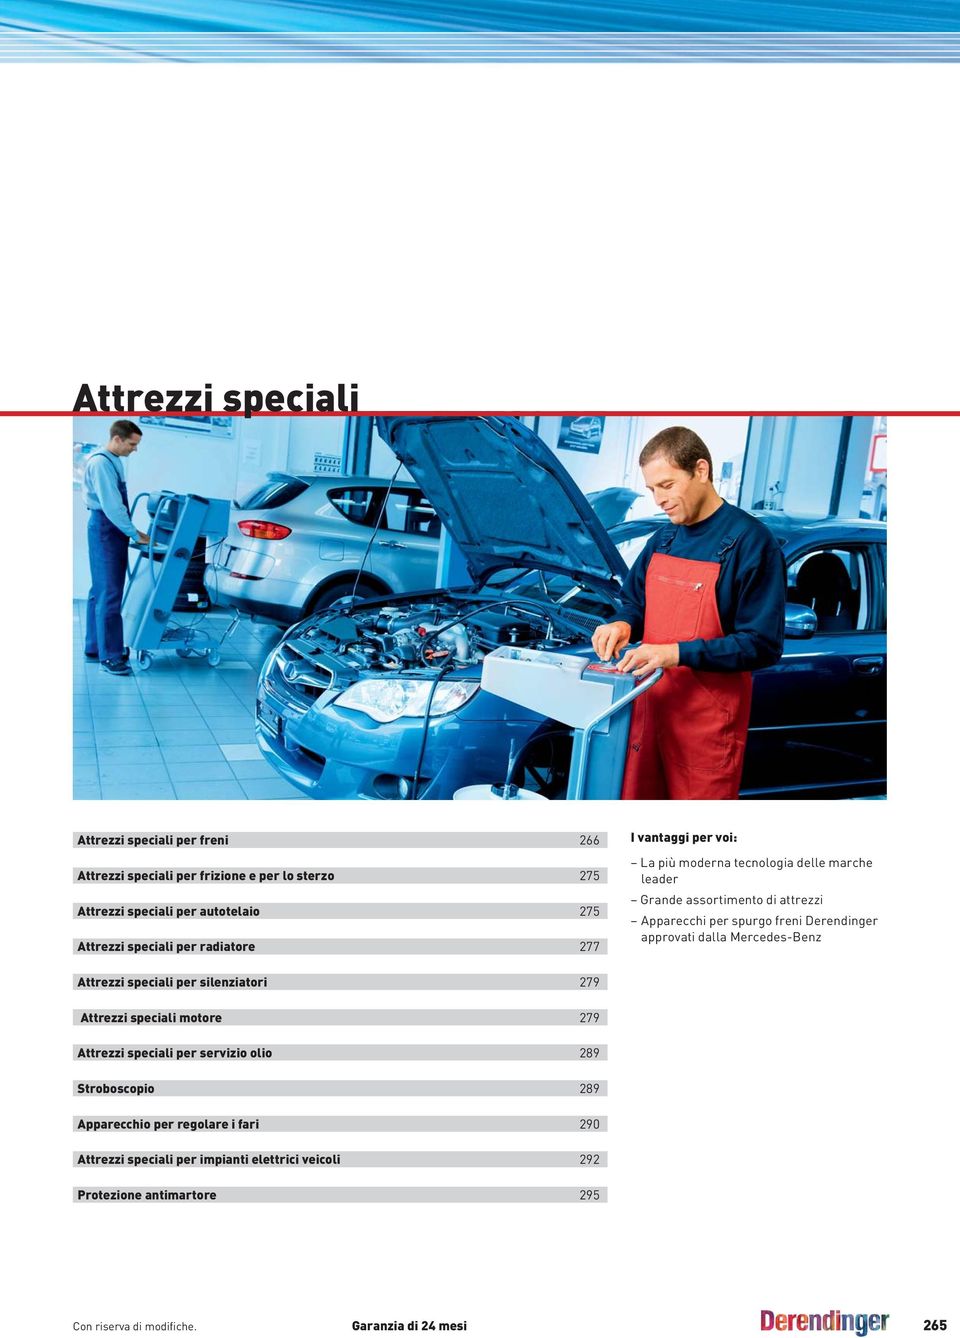 Derendinger approvati dalla Mercedes-Benz Attrezzi speciali per silenziatori 279 Attrezzi speciali motore 279 Attrezzi speciali per servizio